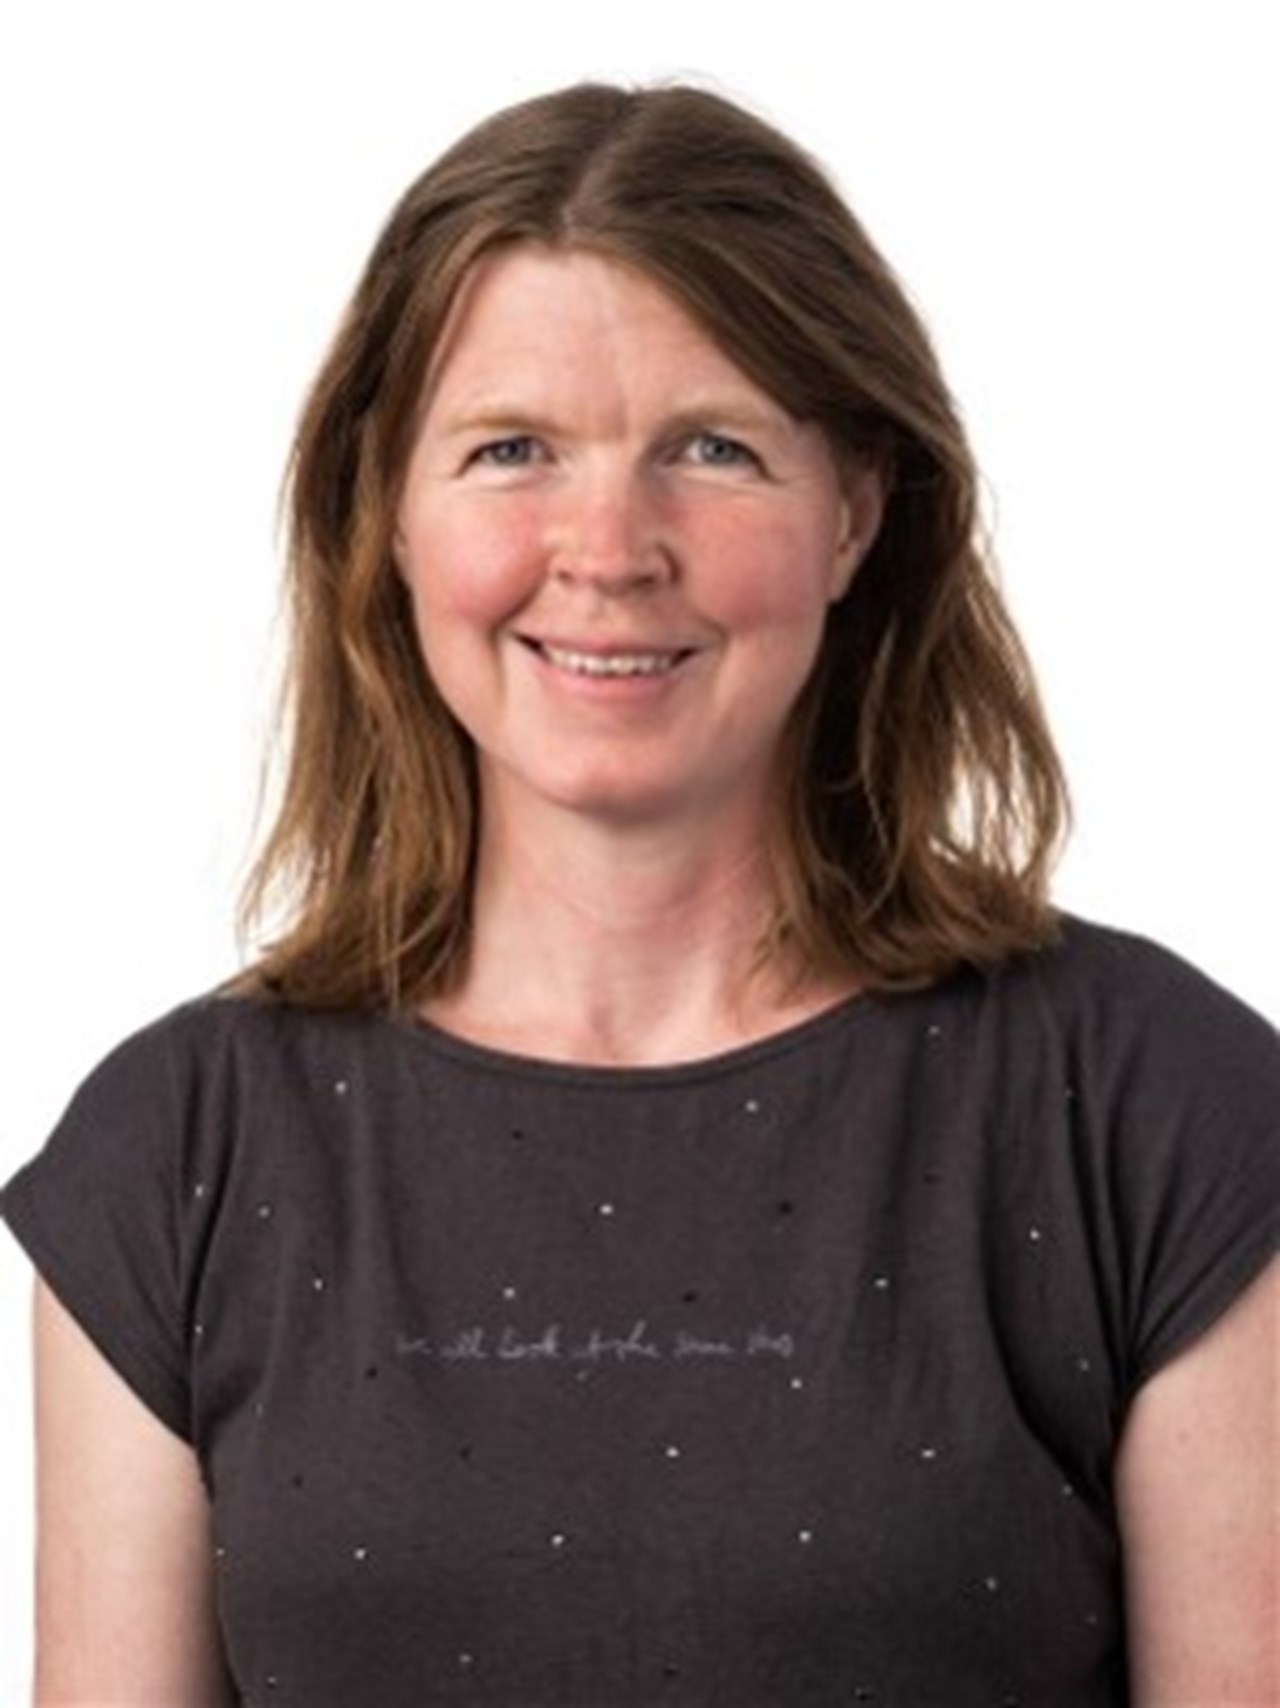 Porträtt på Helena Grip, sjukhusingenjör och docent vid Institutionen för strålningsvetenskaper